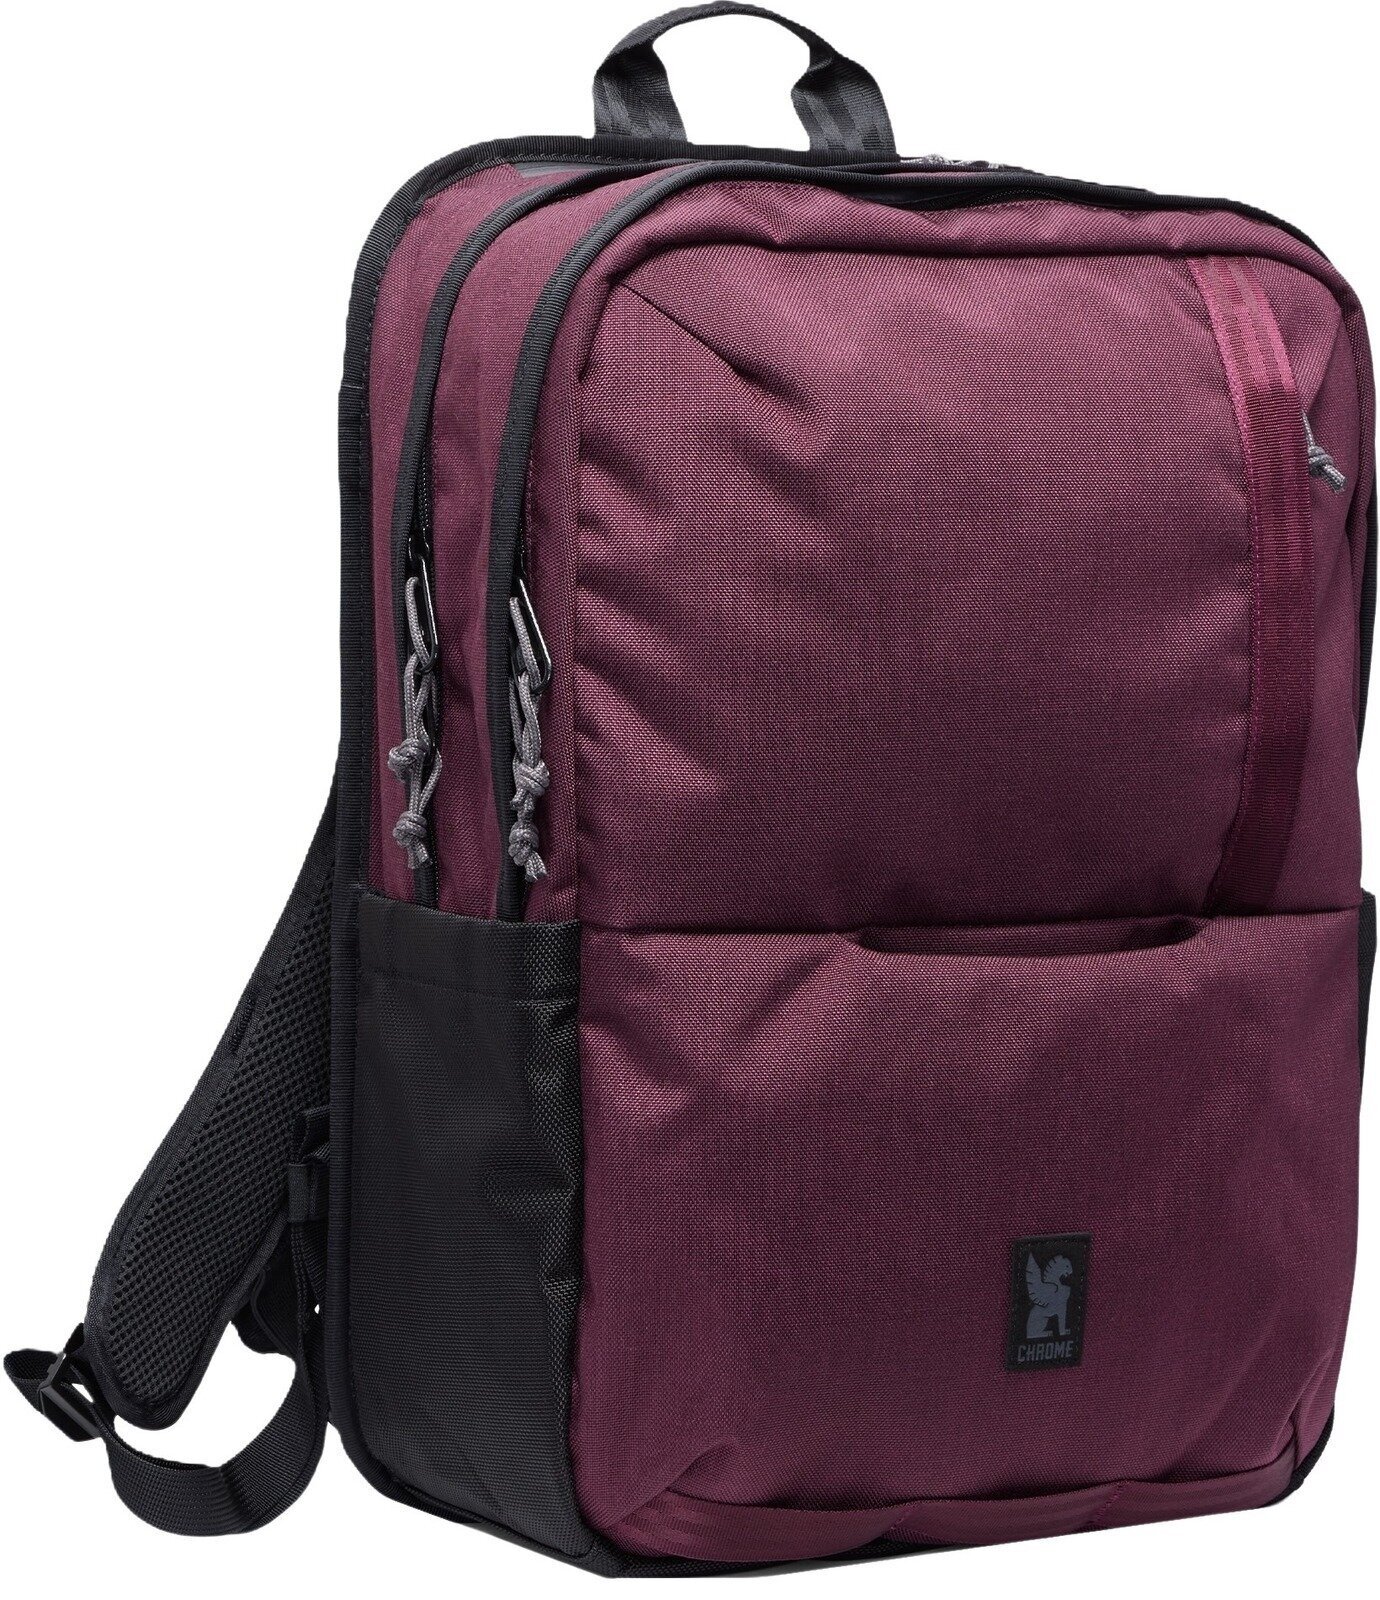 Livsstil rygsæk / taske Chrome Hawes Backpack Royale 26 L Rygsæk